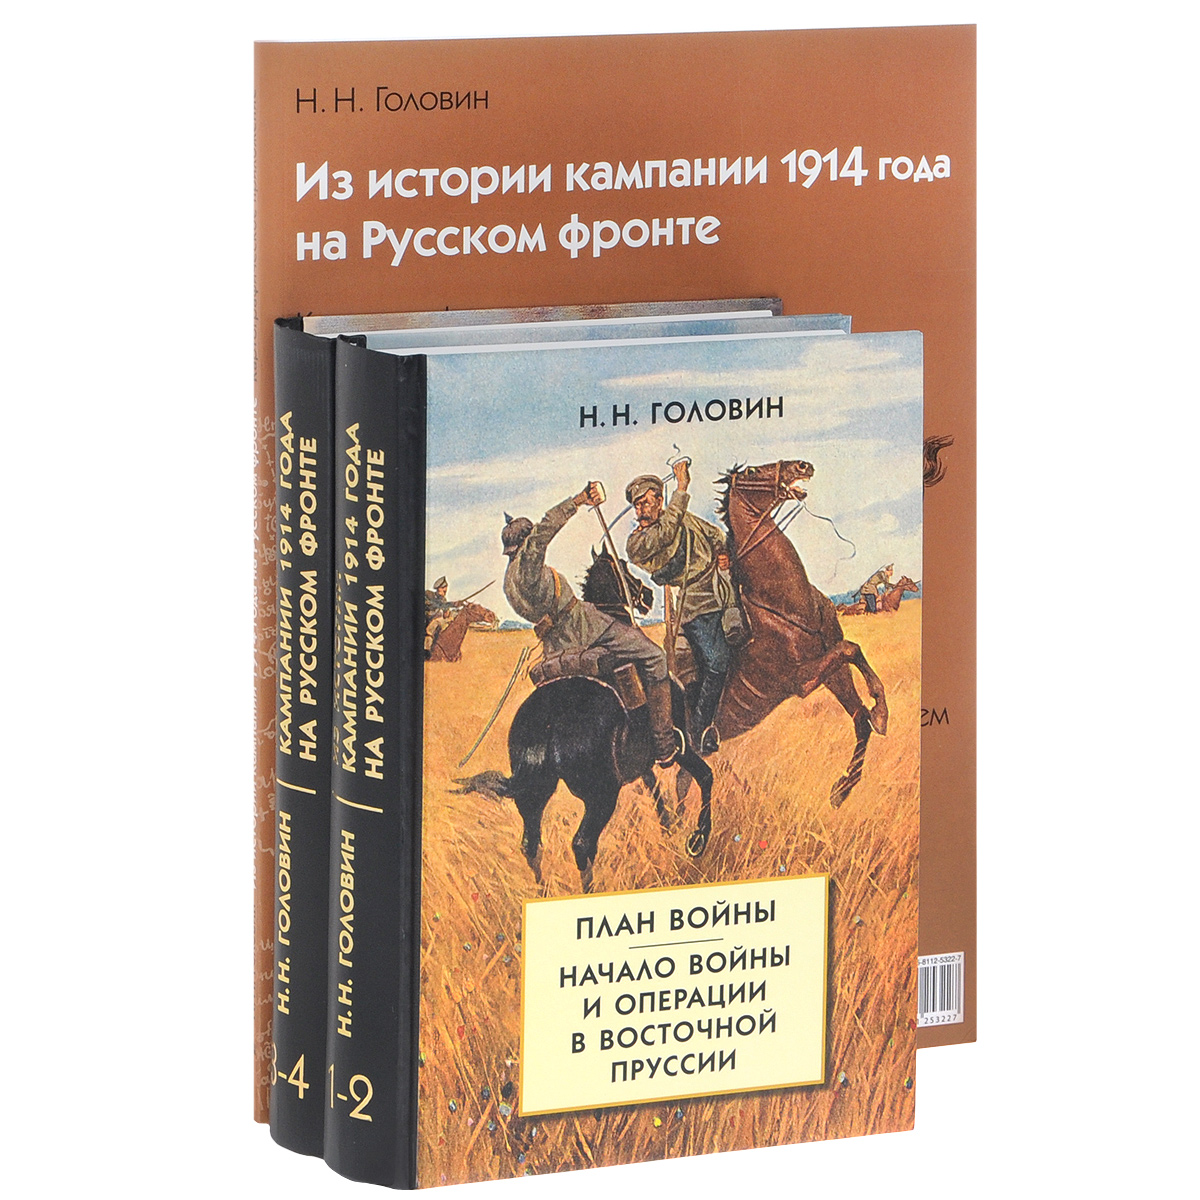 Из истории кампании 1914 года на Русском фронте (комплект из 3 книг). Н. Н. Головин